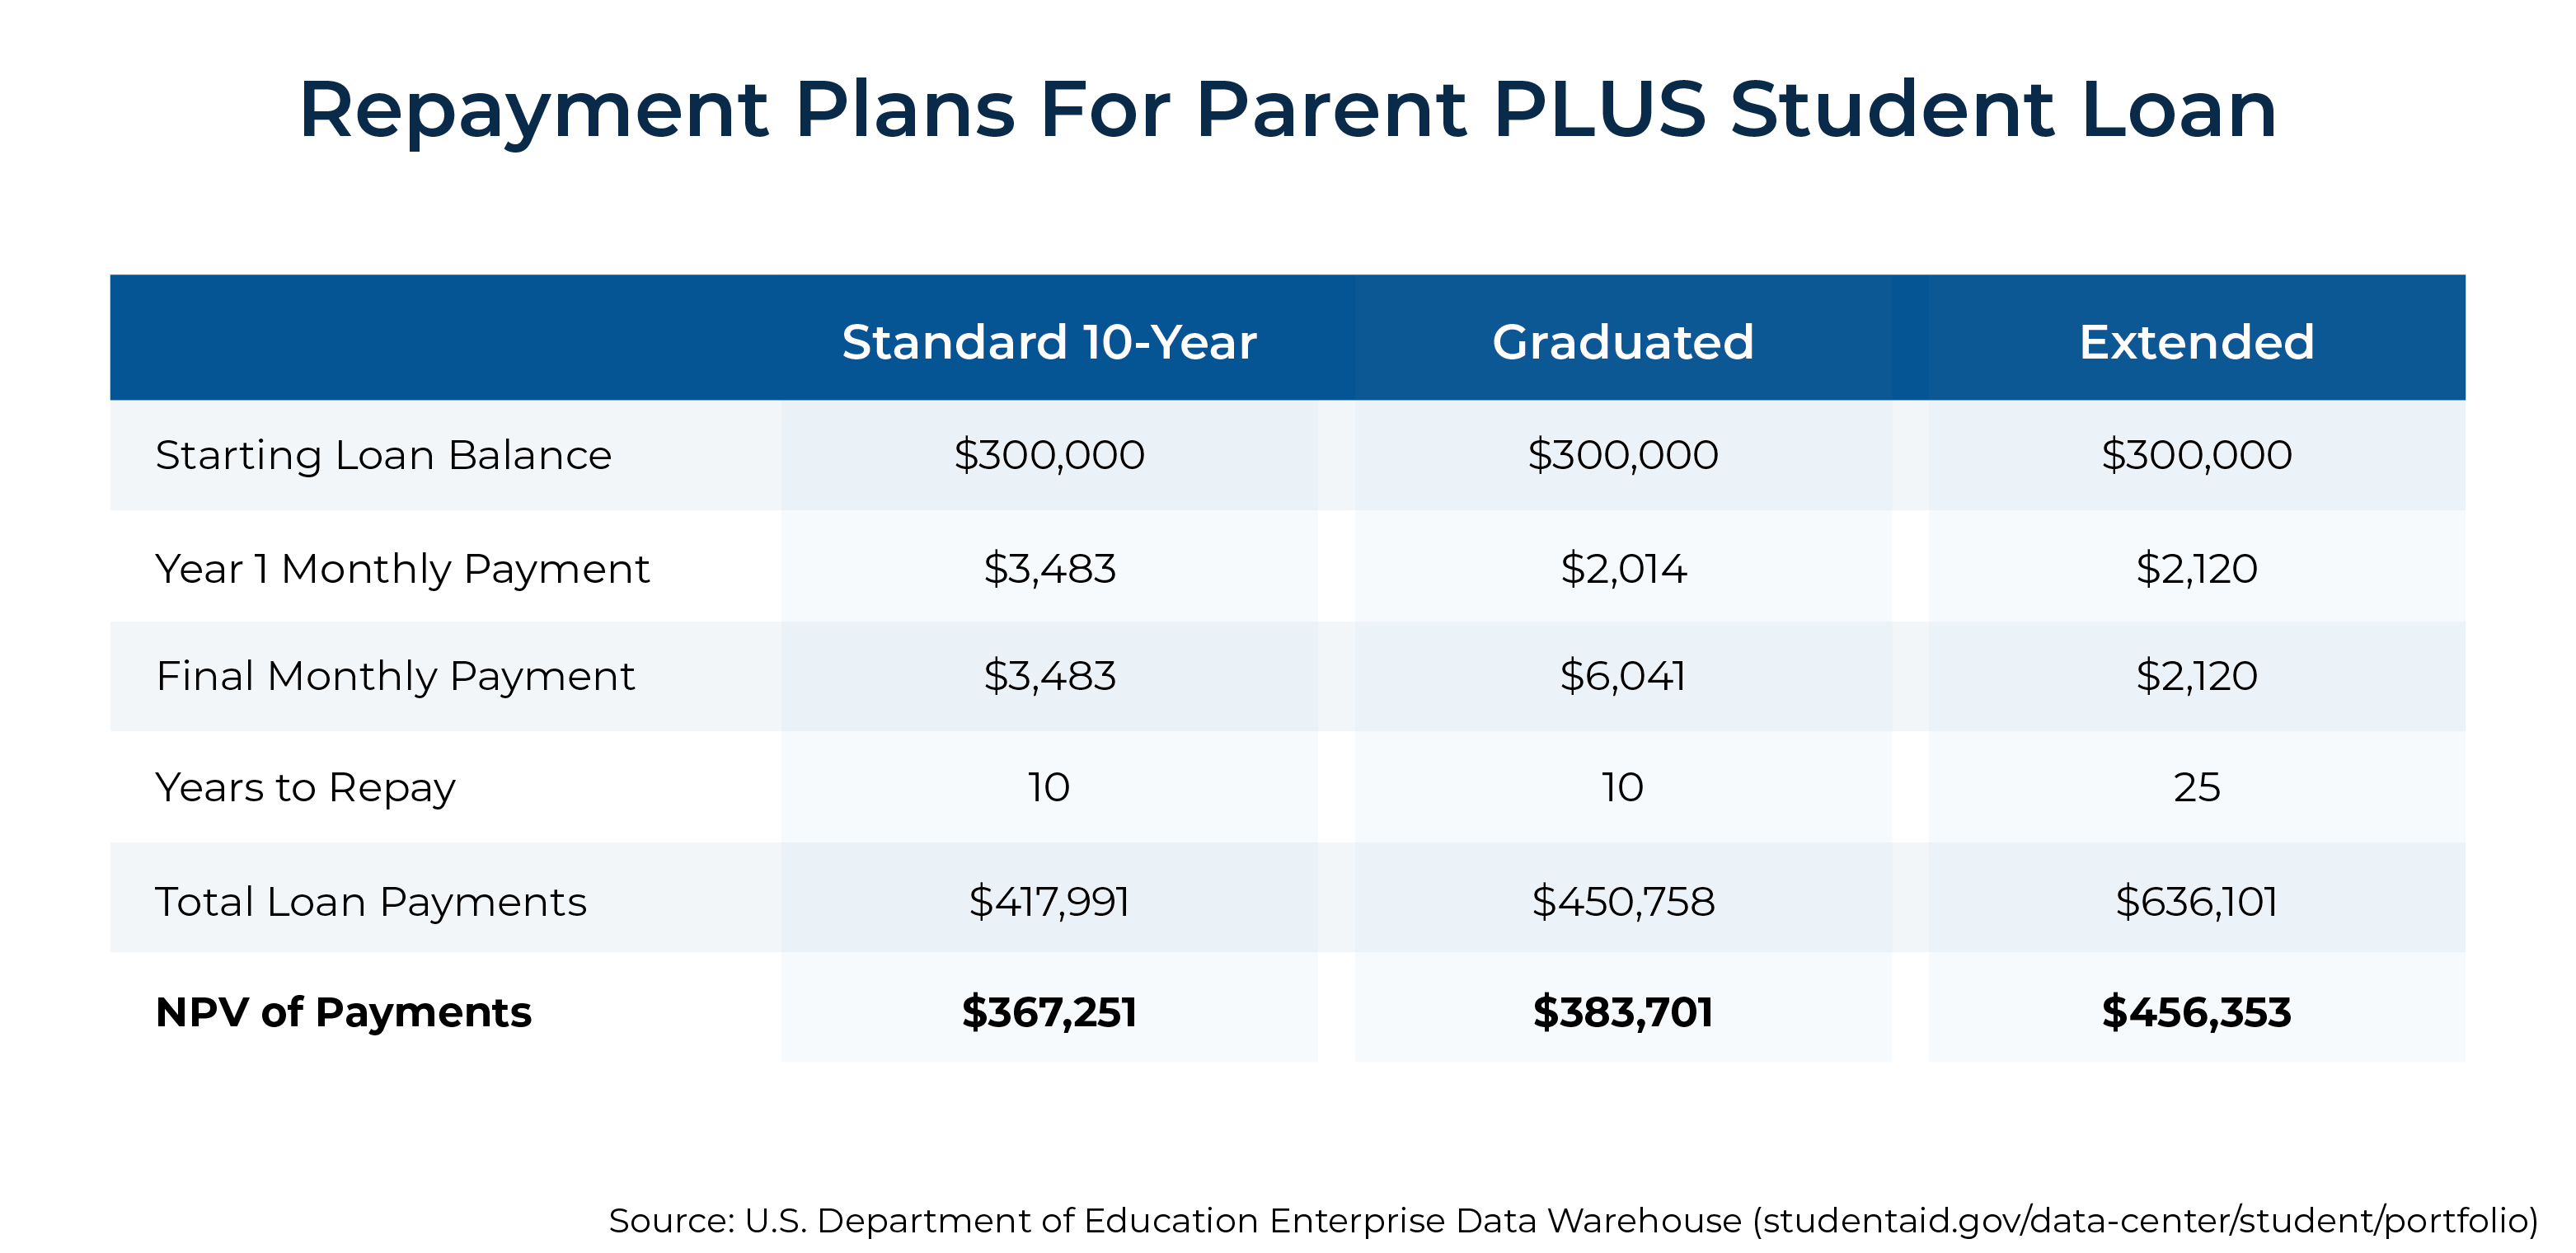 Repayment Plans for Parent PLUS Student Loan